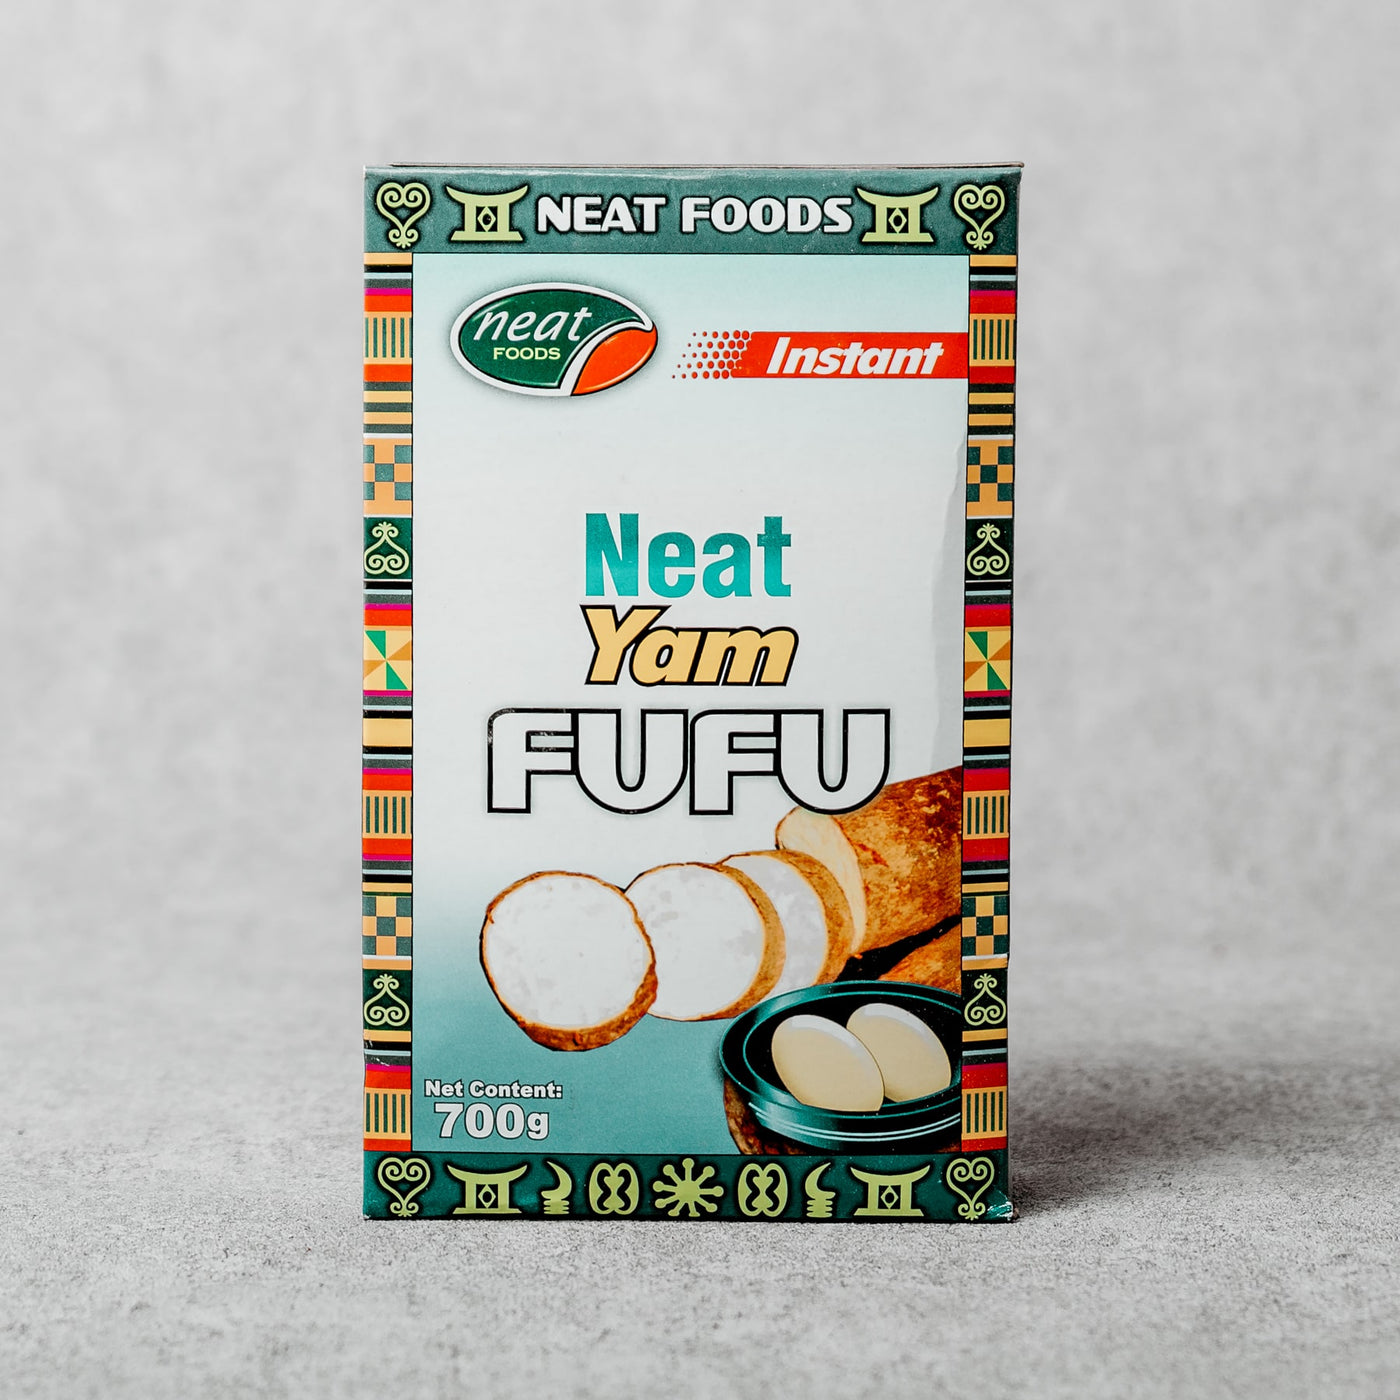 Neat Foods - Yam Fufu